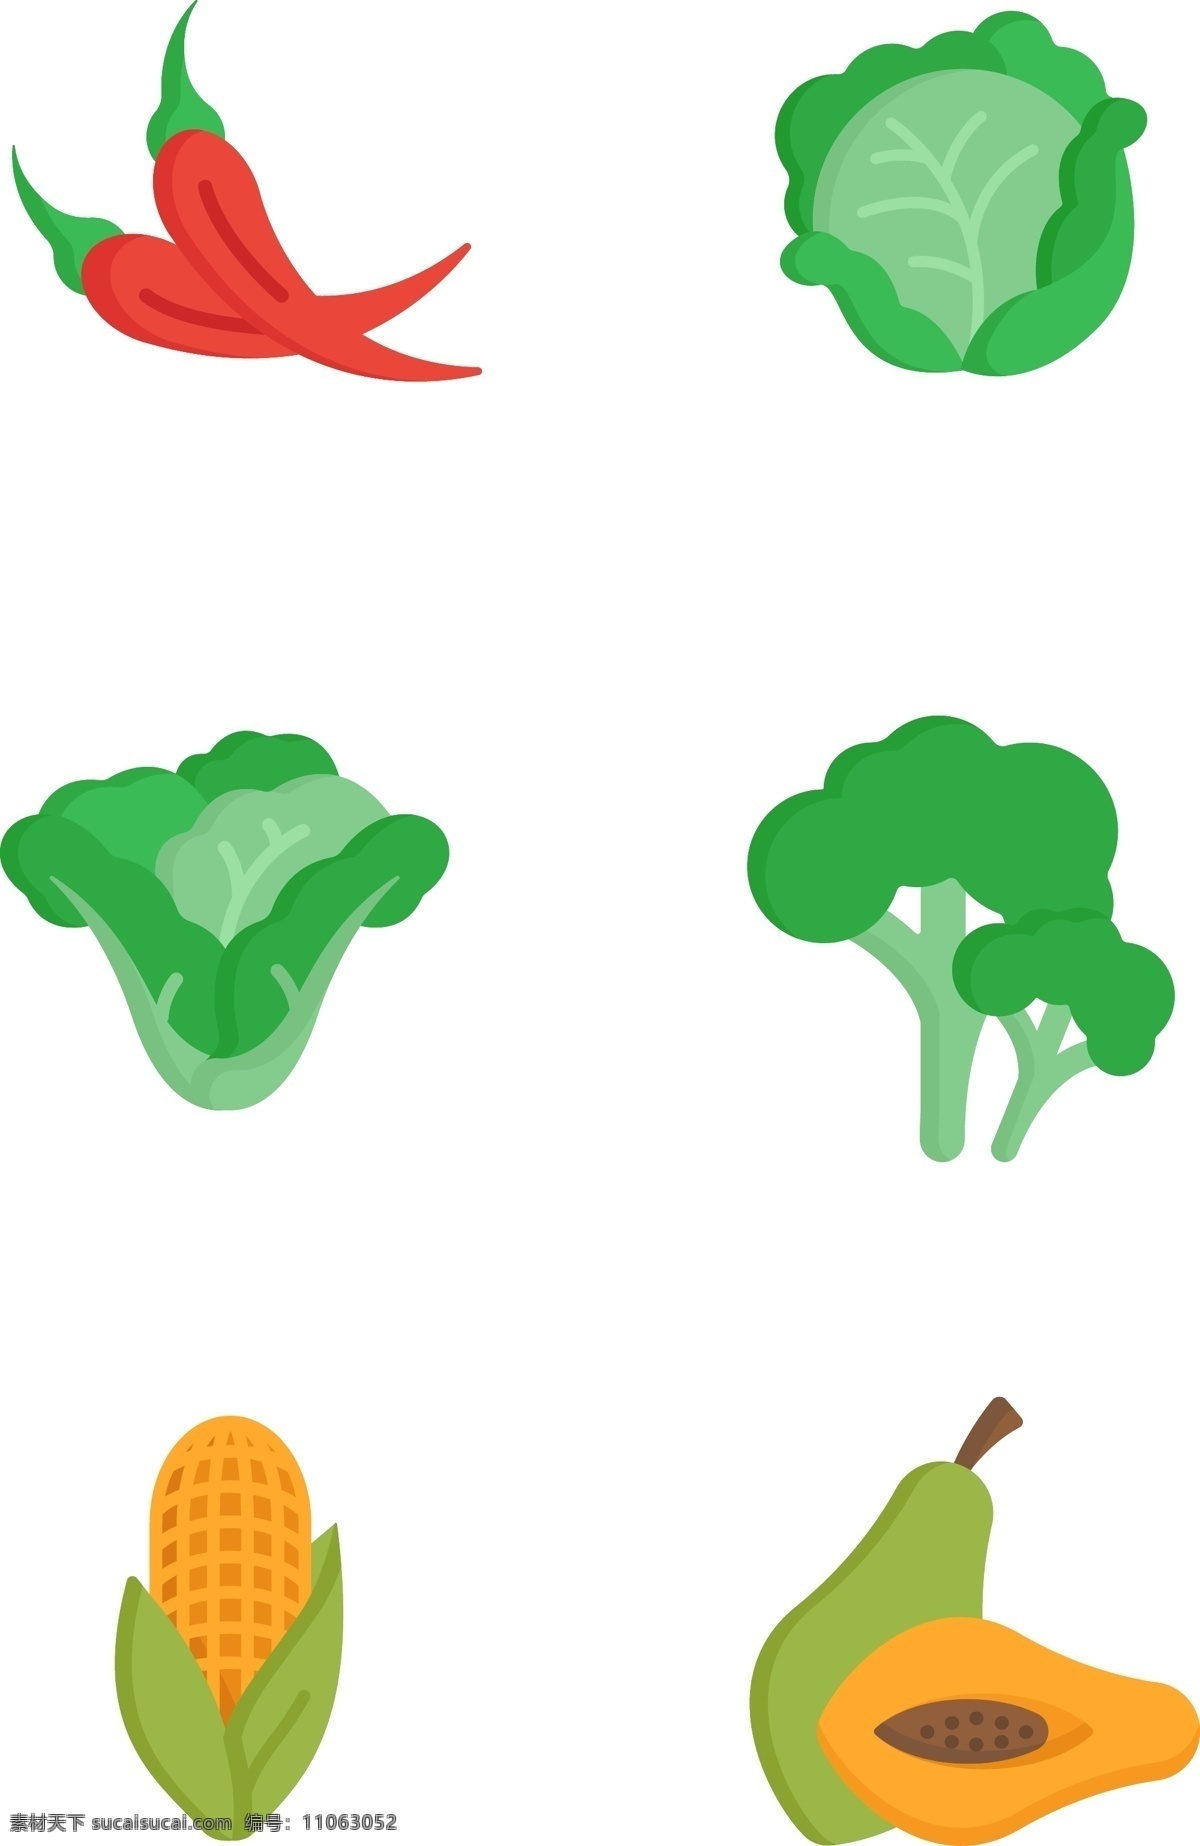 好吃 蔬菜 插画 图标 扁平化 拟物 好吃的 美味的 辣椒 白菜 卷心菜 菜花 玉米 木瓜 有趣的 可爱的